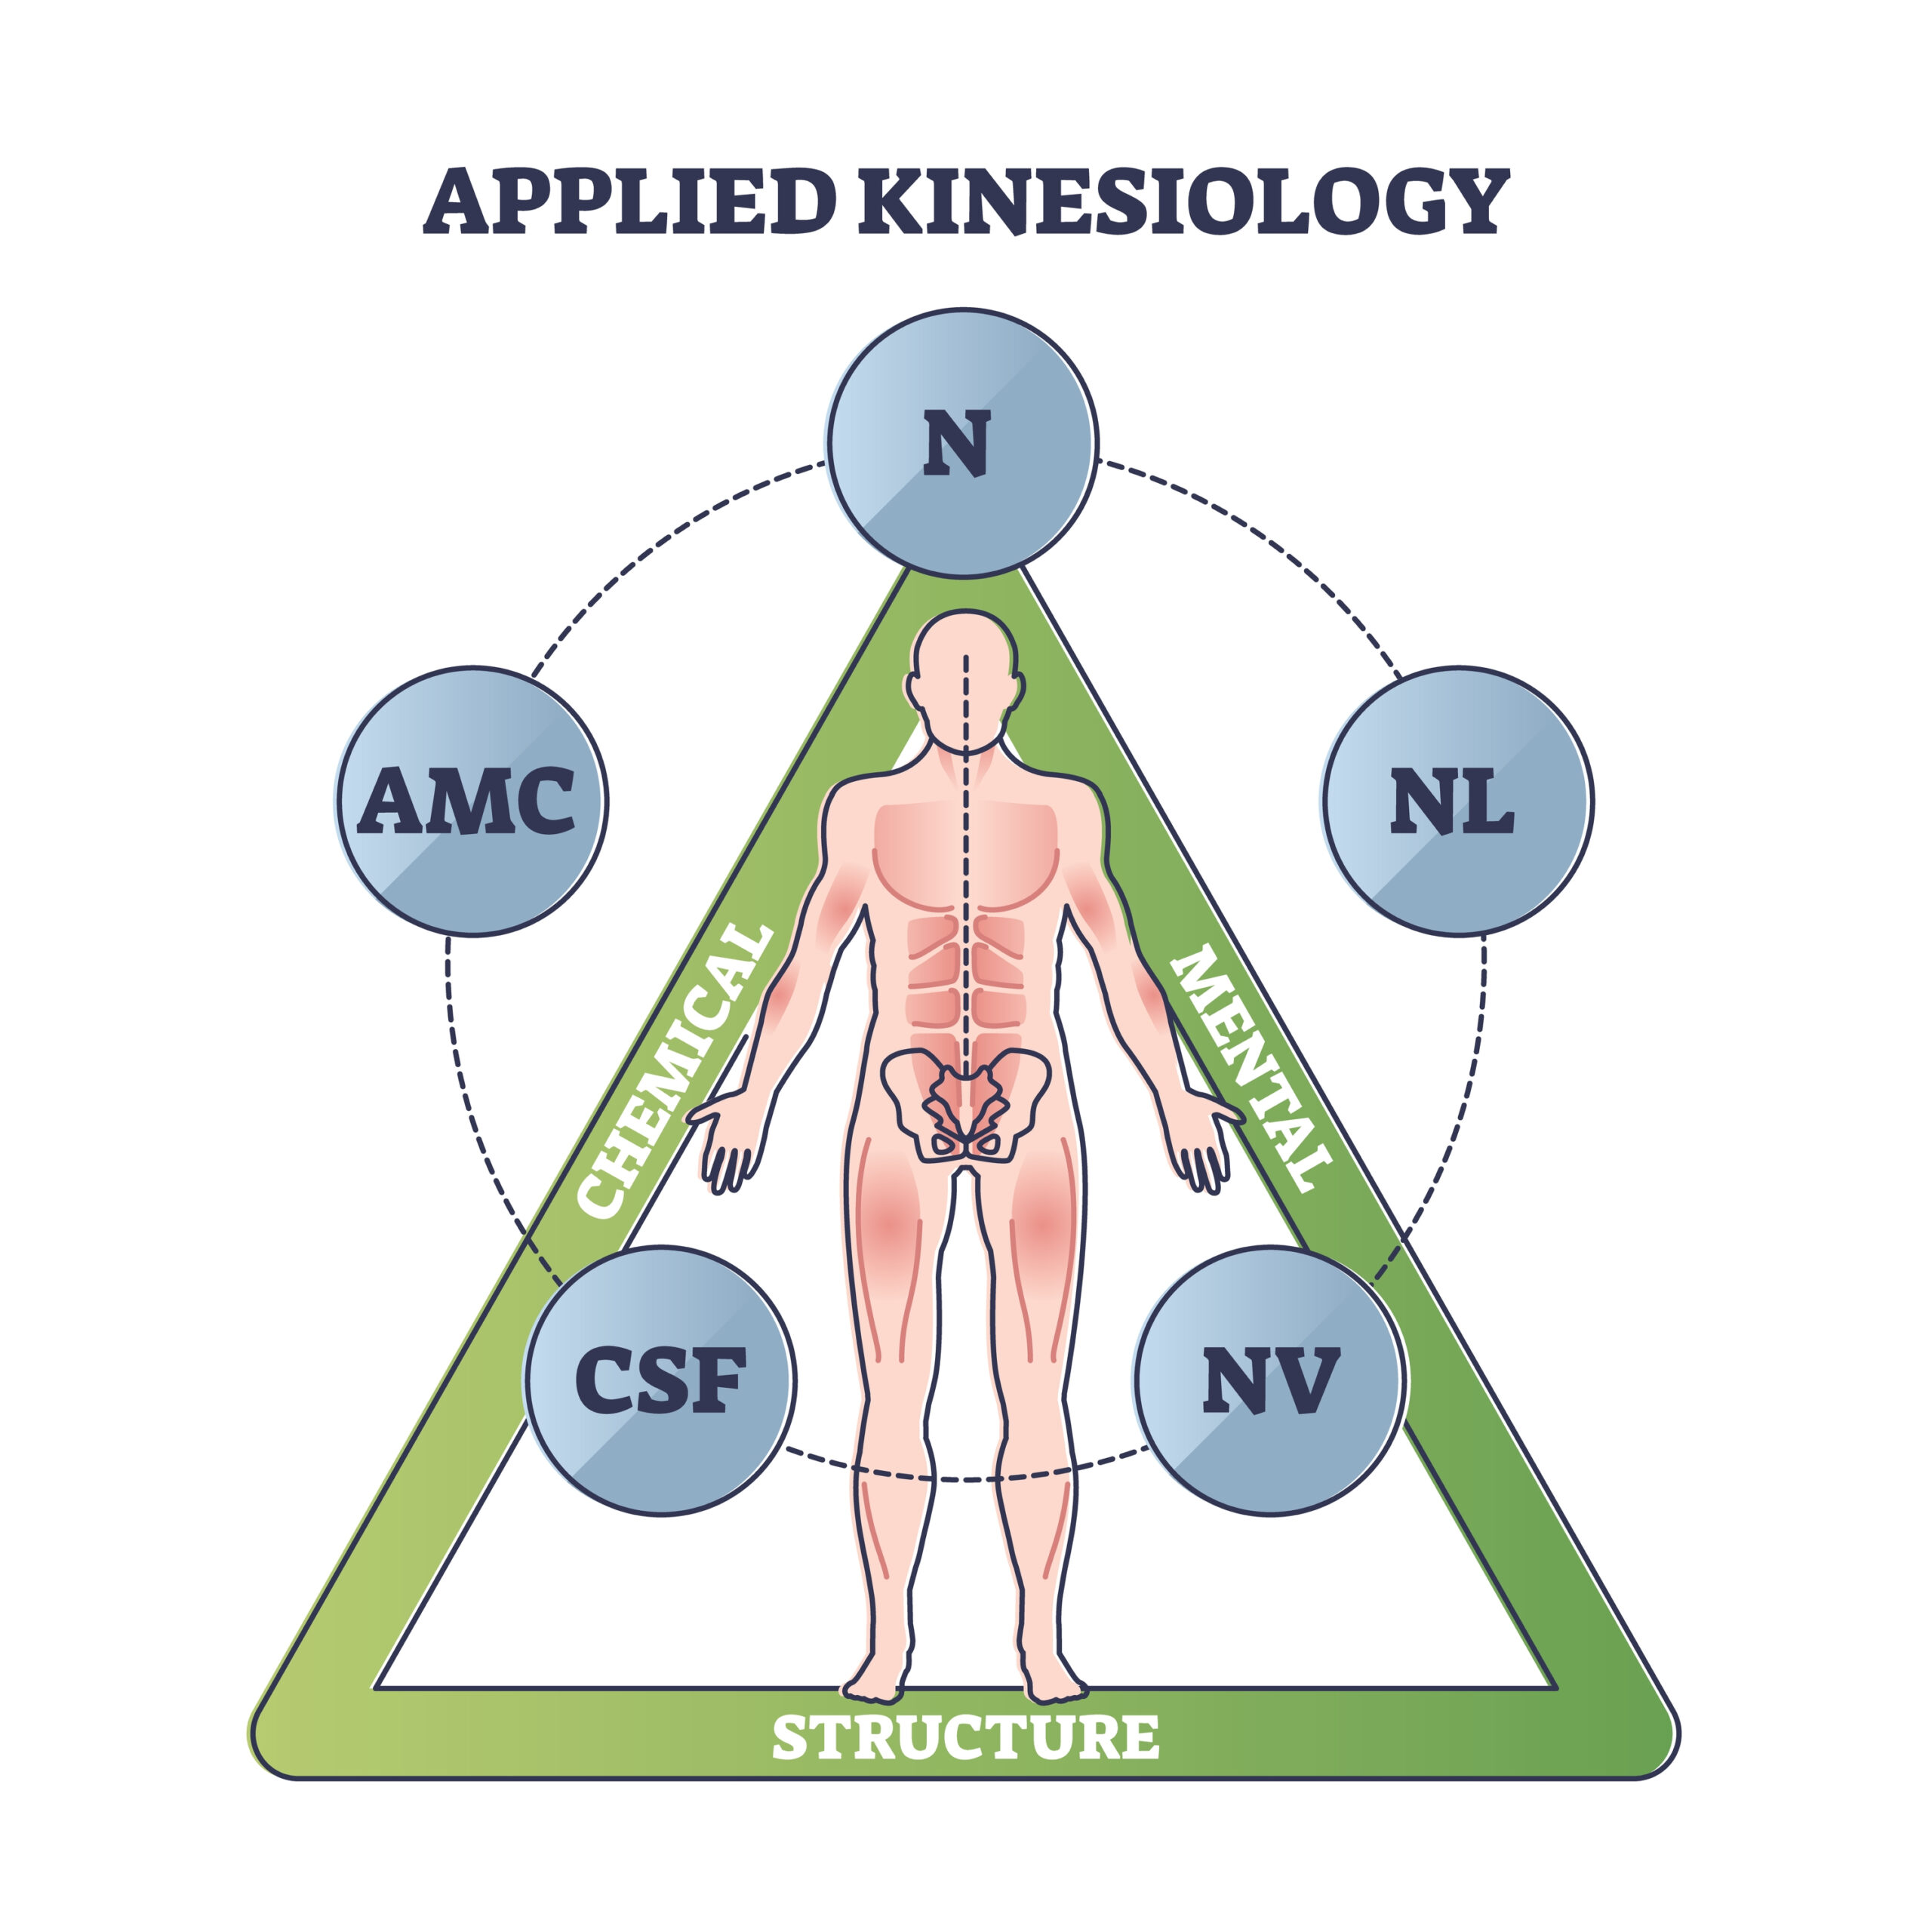 Angewandte Kinesiologie” im Modell ihres Begründers, des US-amerikanischen Chiropraktikers George J. Goodheart.